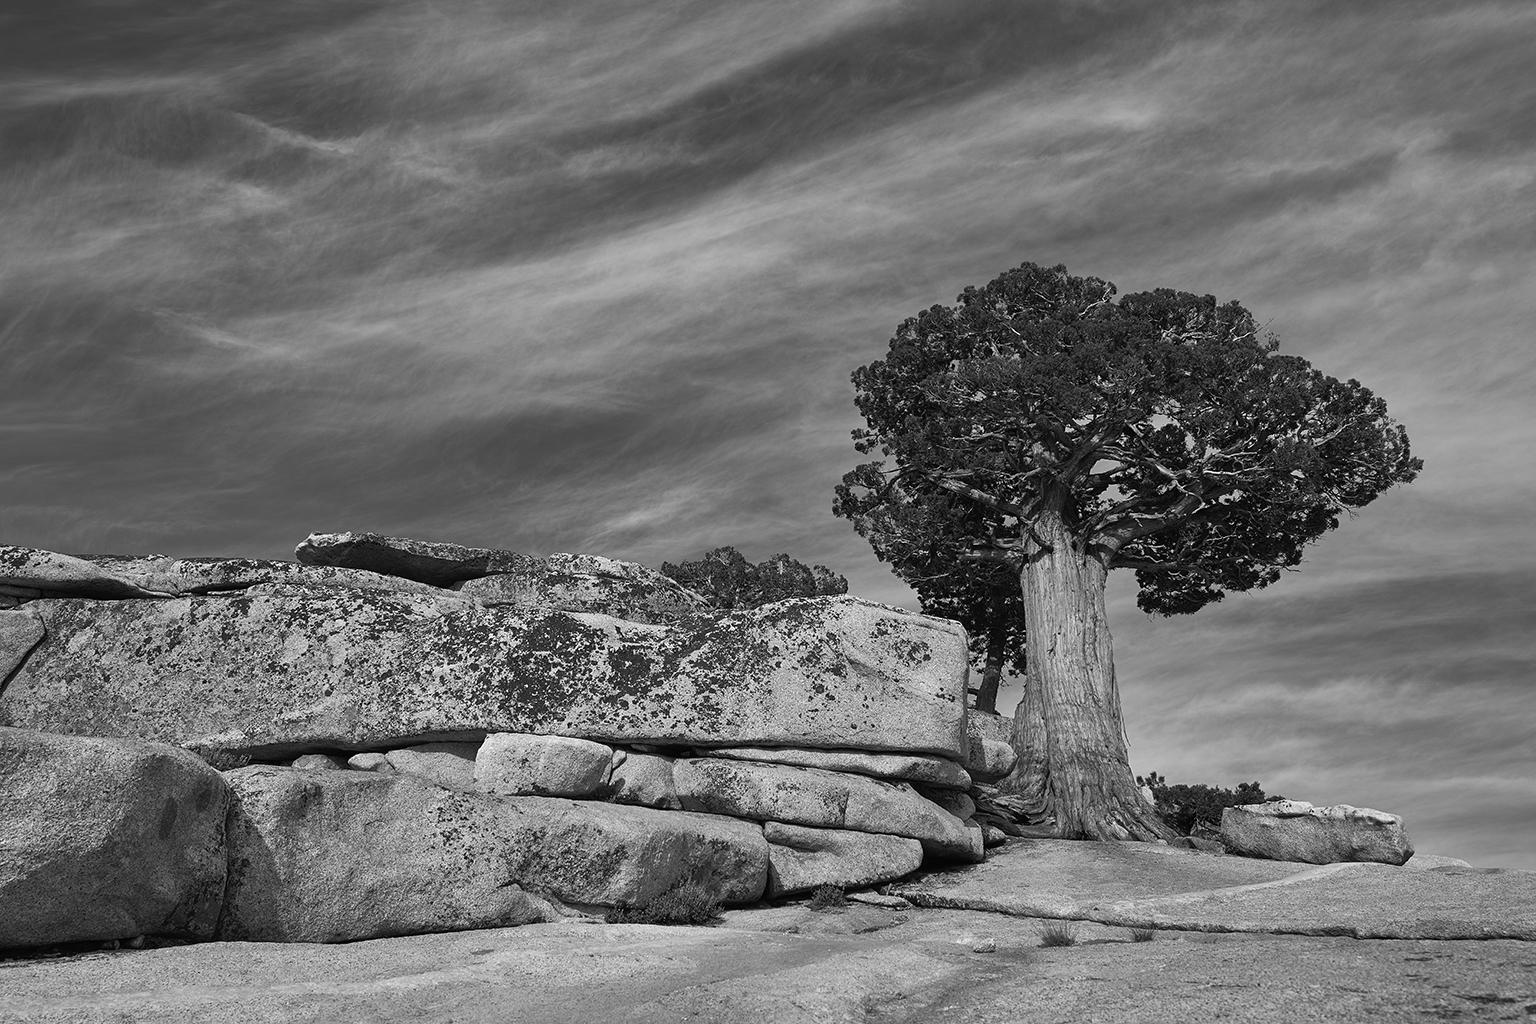 Frank Schott Black and White Photograph – Tree Study IV – Großformatige b/w-Fotografie eines einsamen antiken Baumes in Landschaft